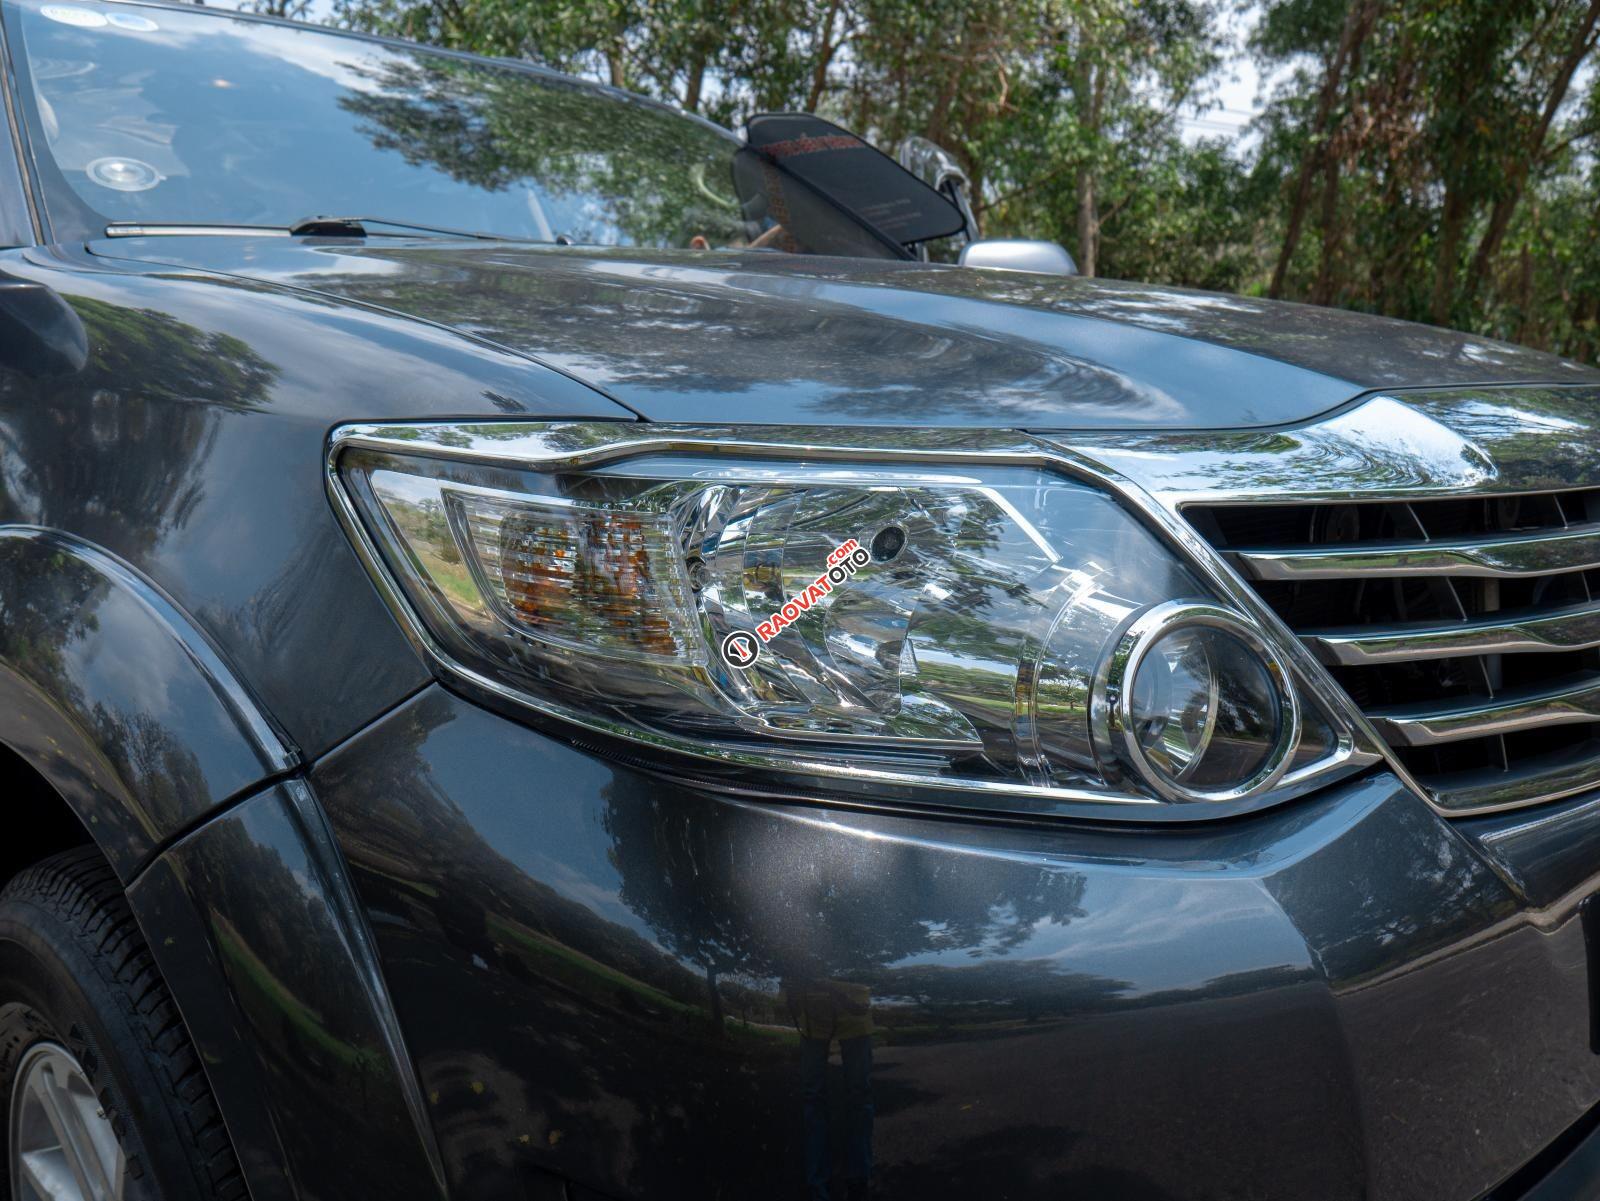 Cần bán Toyota Fortuner 2.7V sản xuất 2013, đăng ký 2014. Xe ngon giá tốt chính chủ biển HCM-7